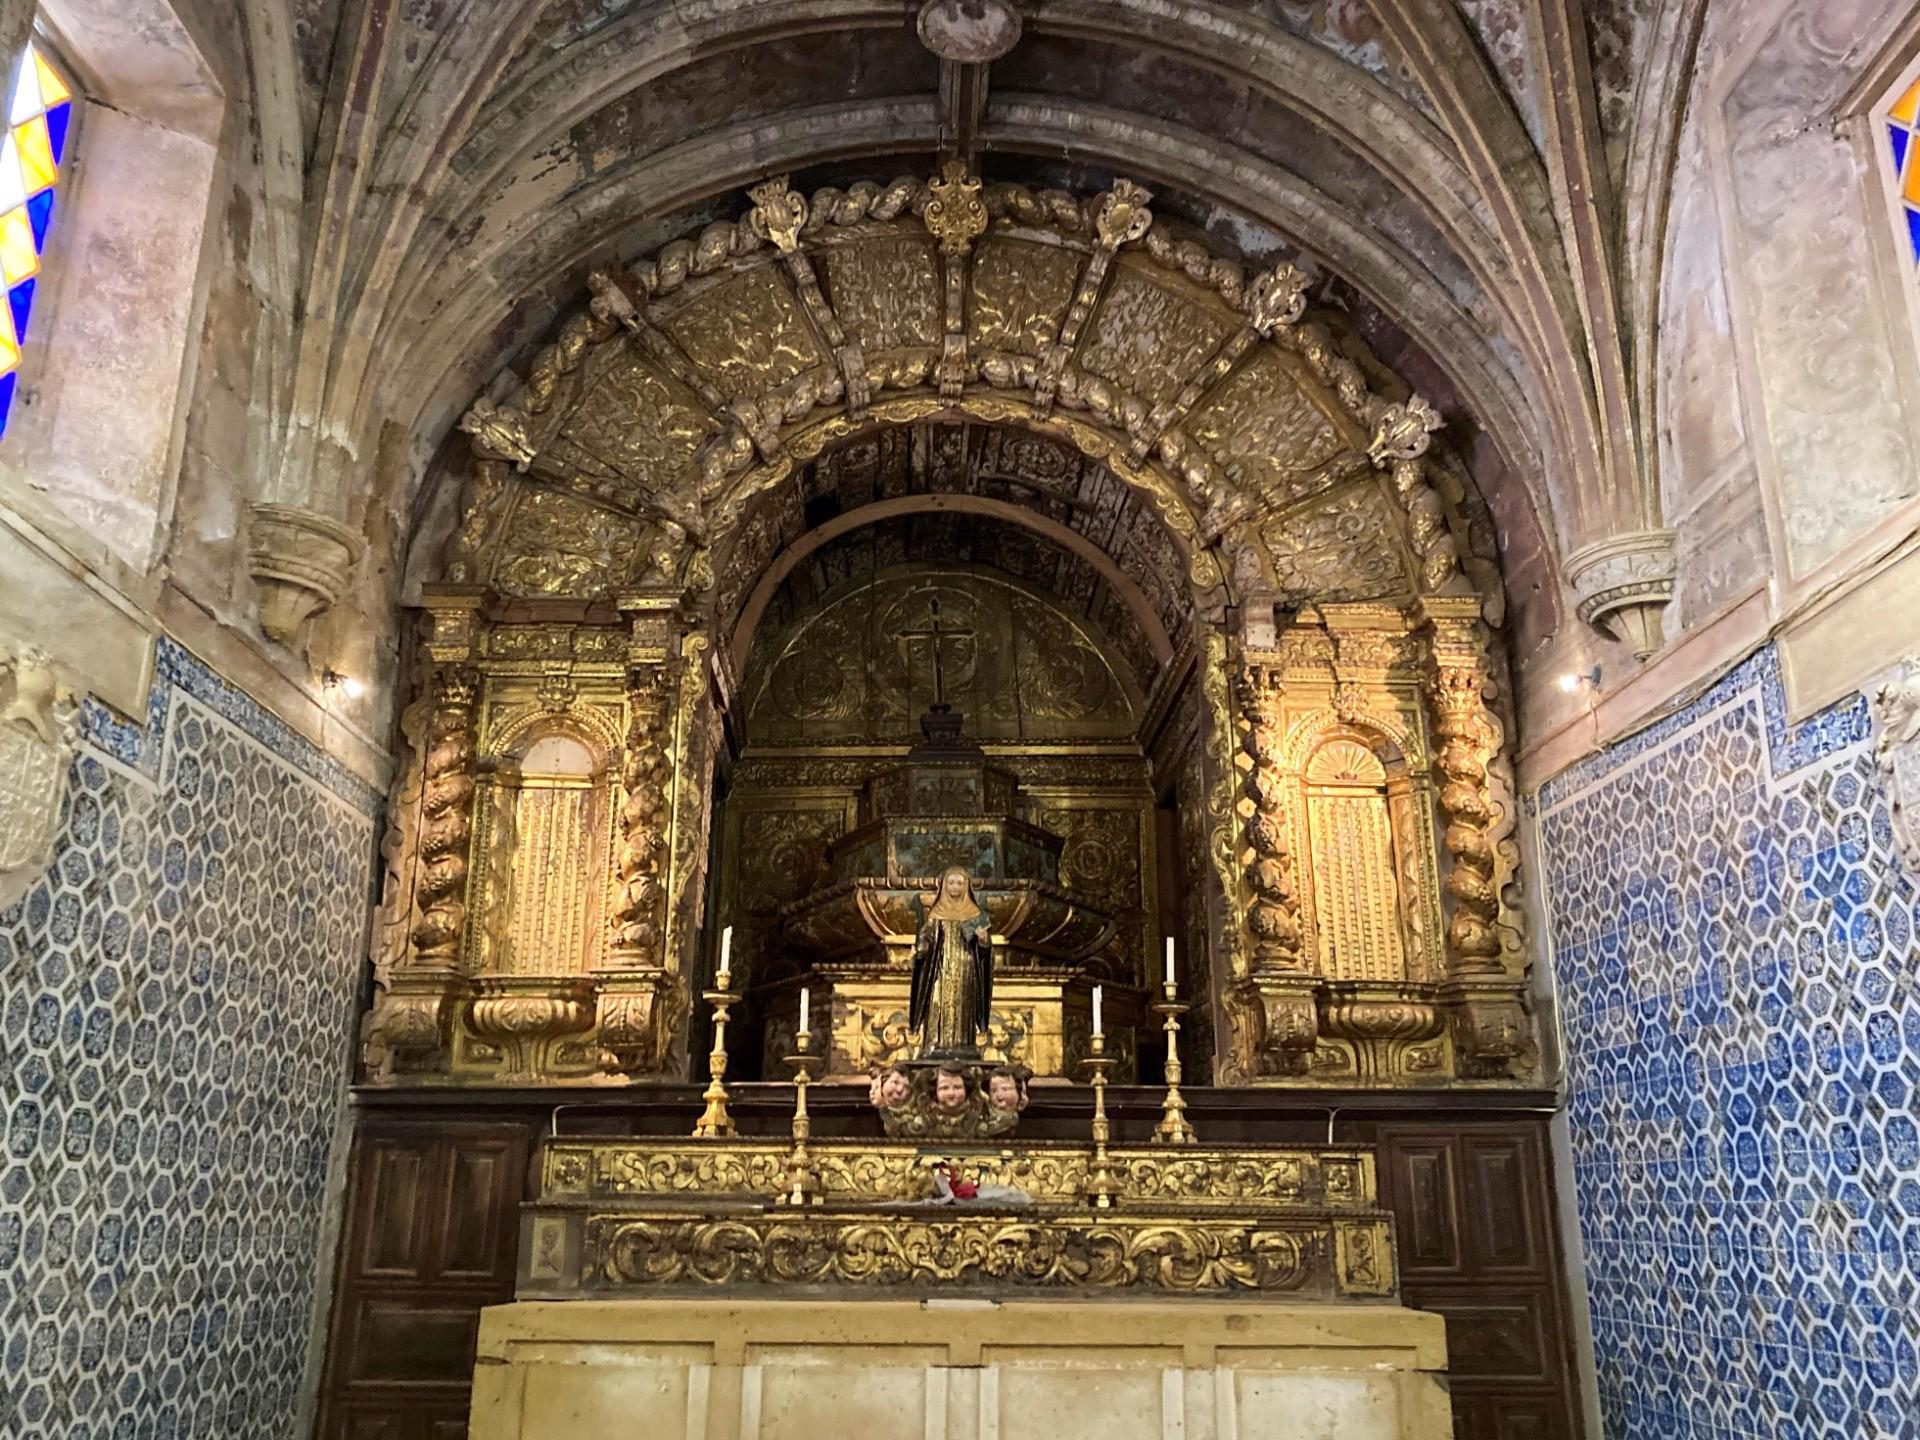 Altar - Capela dedicada a Santa Iria, padroeira da cidade. Foi mandada construir no século XV, tendo sofrido uma remodelação e ampliação no século XVI, que lhe acrescentou elementos renascentistas. 